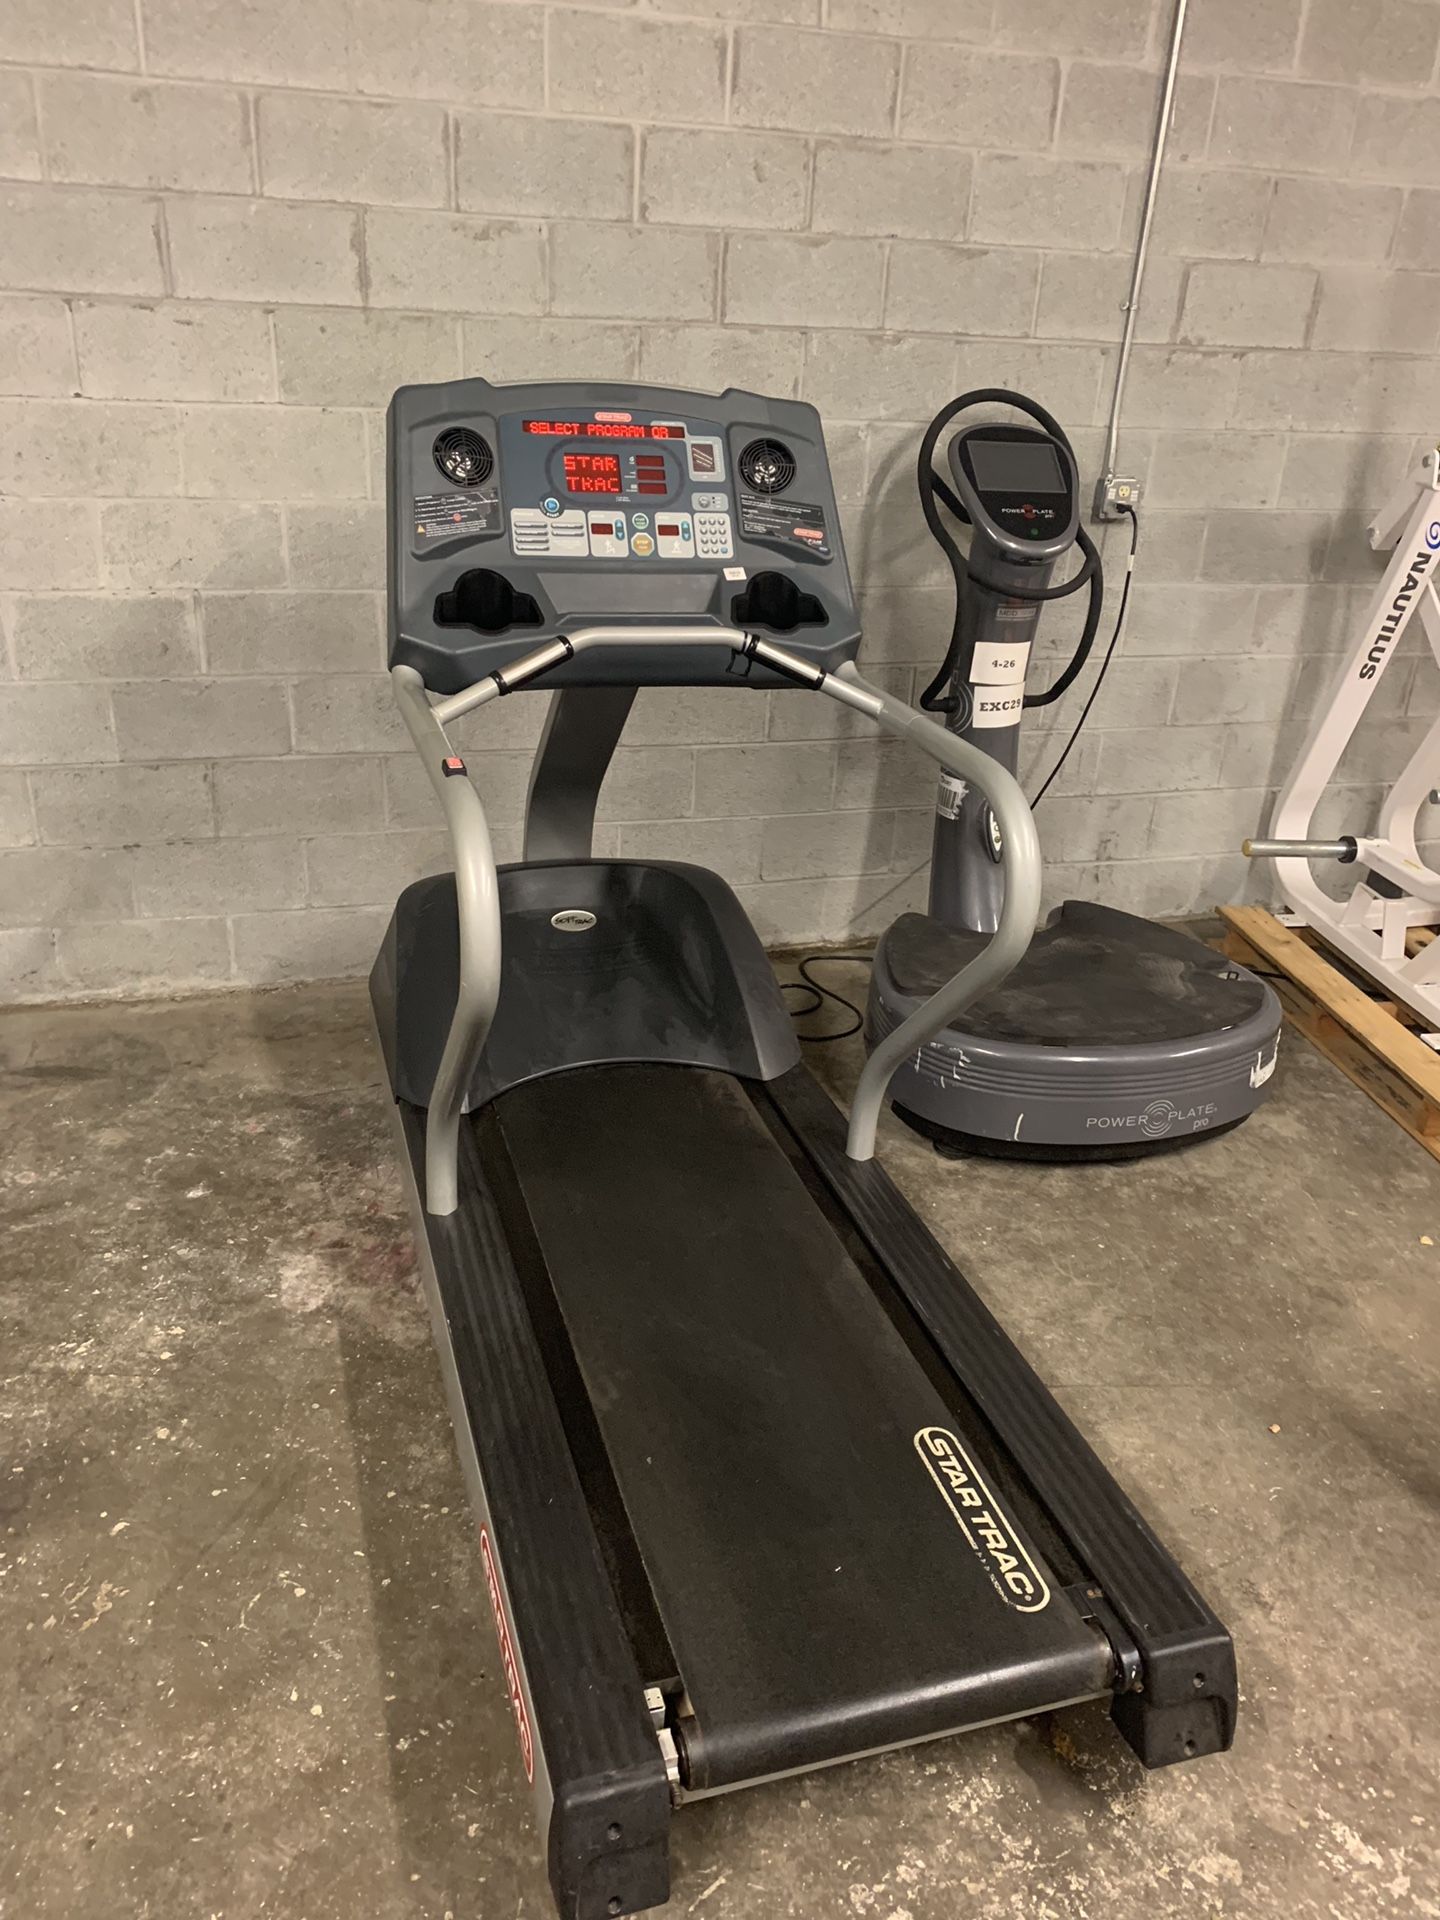 Star trac pro 7600 treadmill